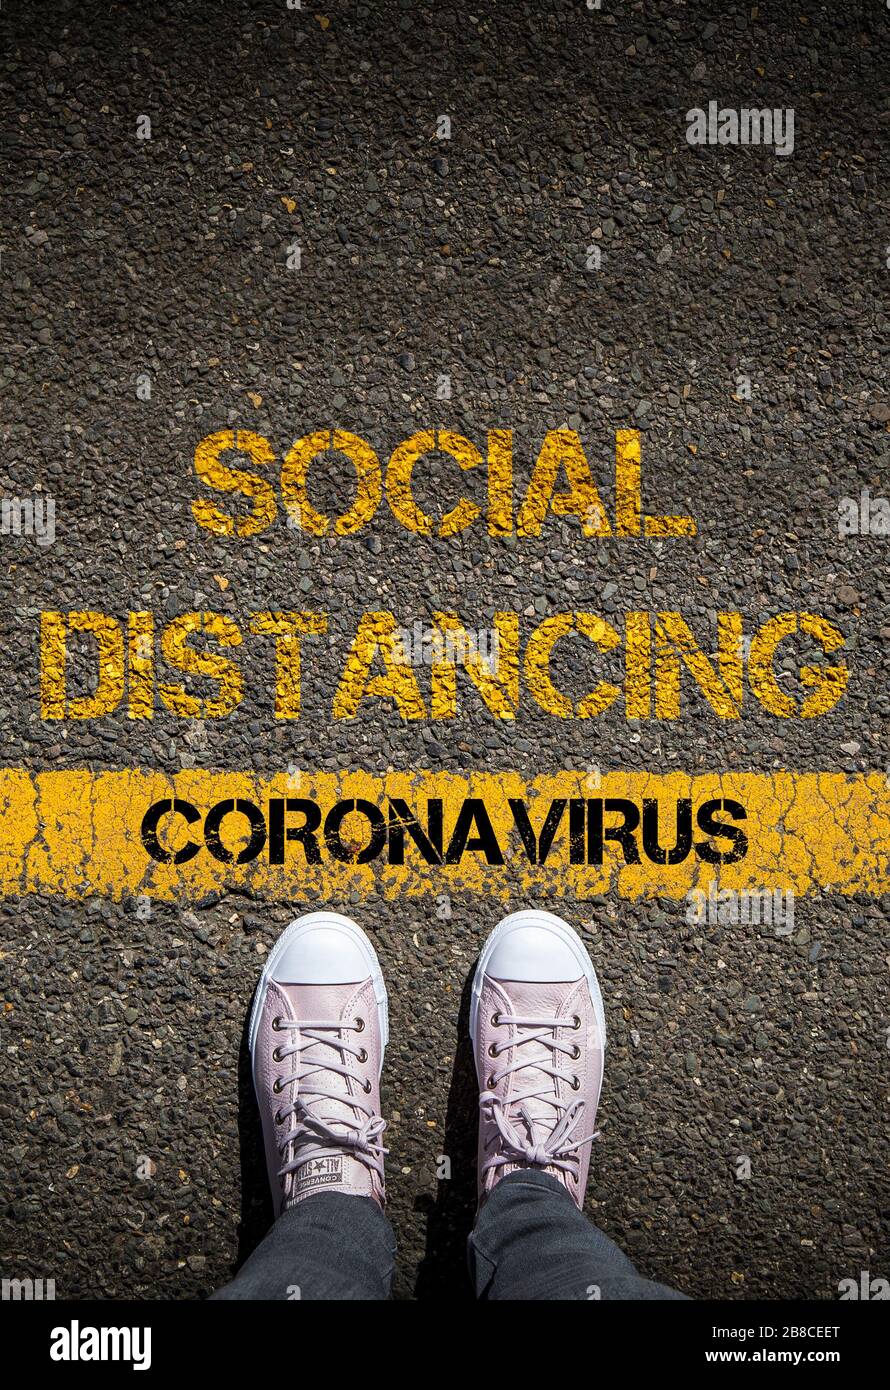 Distanza sociale per ridurre la diffusione di Coronavirus, immagine concettuale. Foto Stock